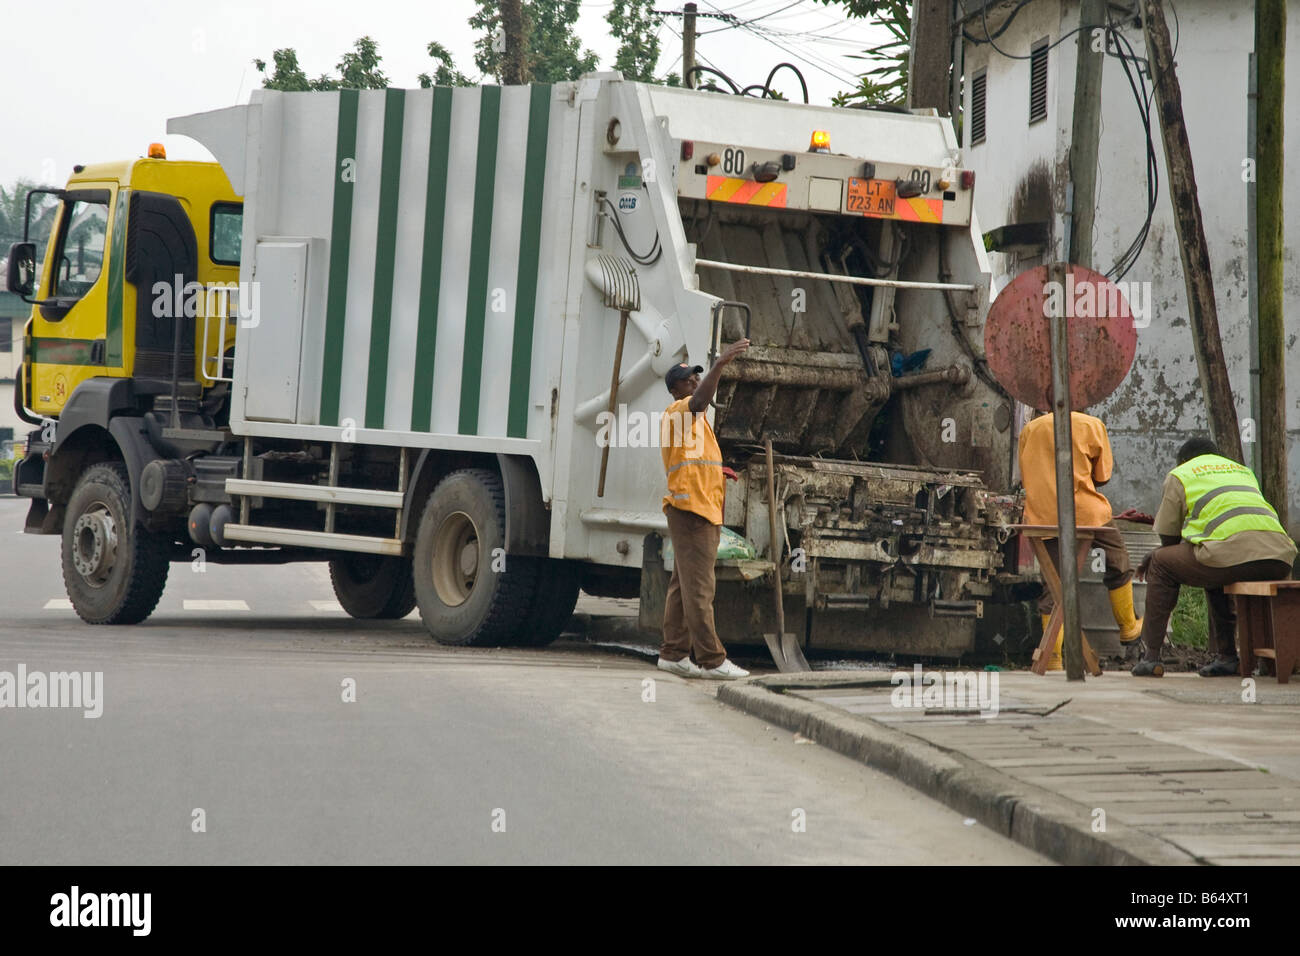 Collecte des ordures Douala Cameroun Afrique Banque D'Images